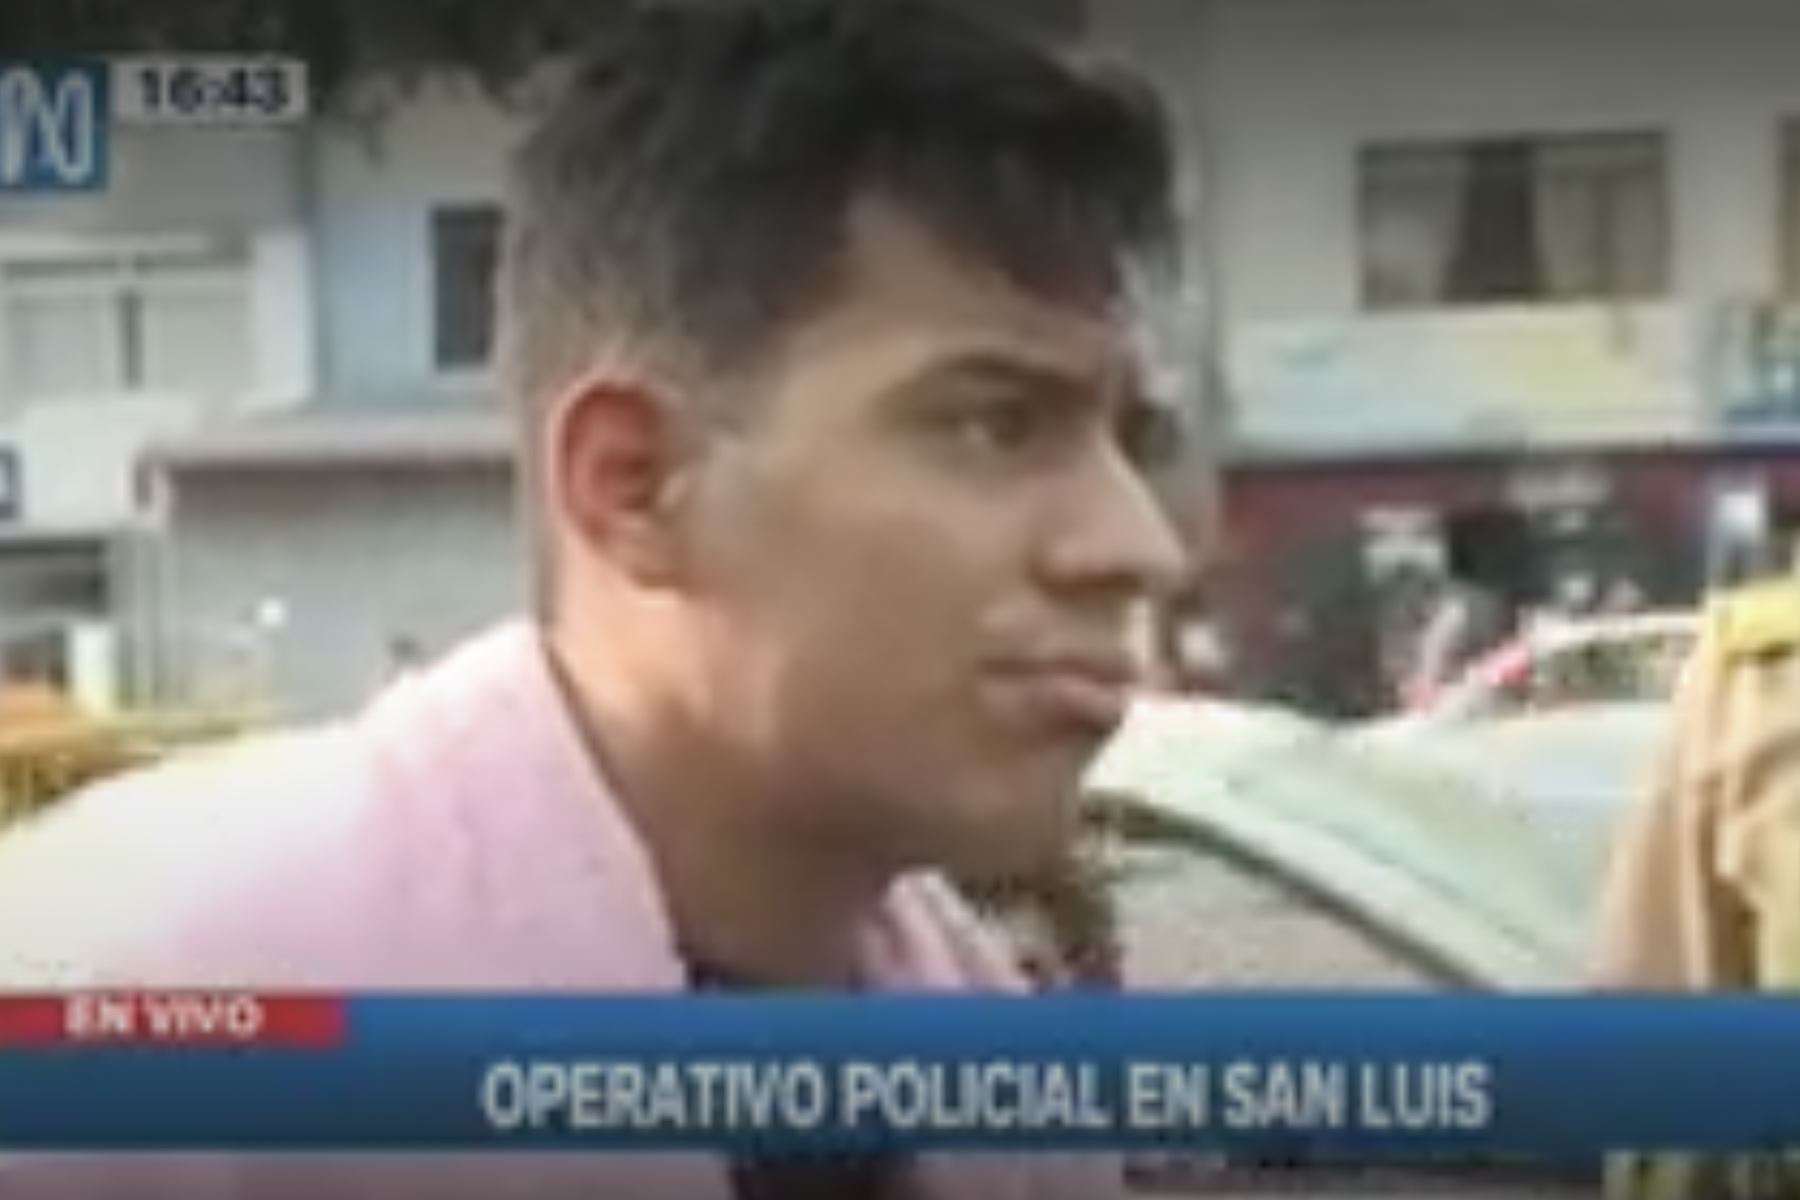 La PNP logró la intervención de un ciudadano venezolano que estaría vinculado al crimen ocurrido en el distrito de Lince durante la madrugada. Captura TV.